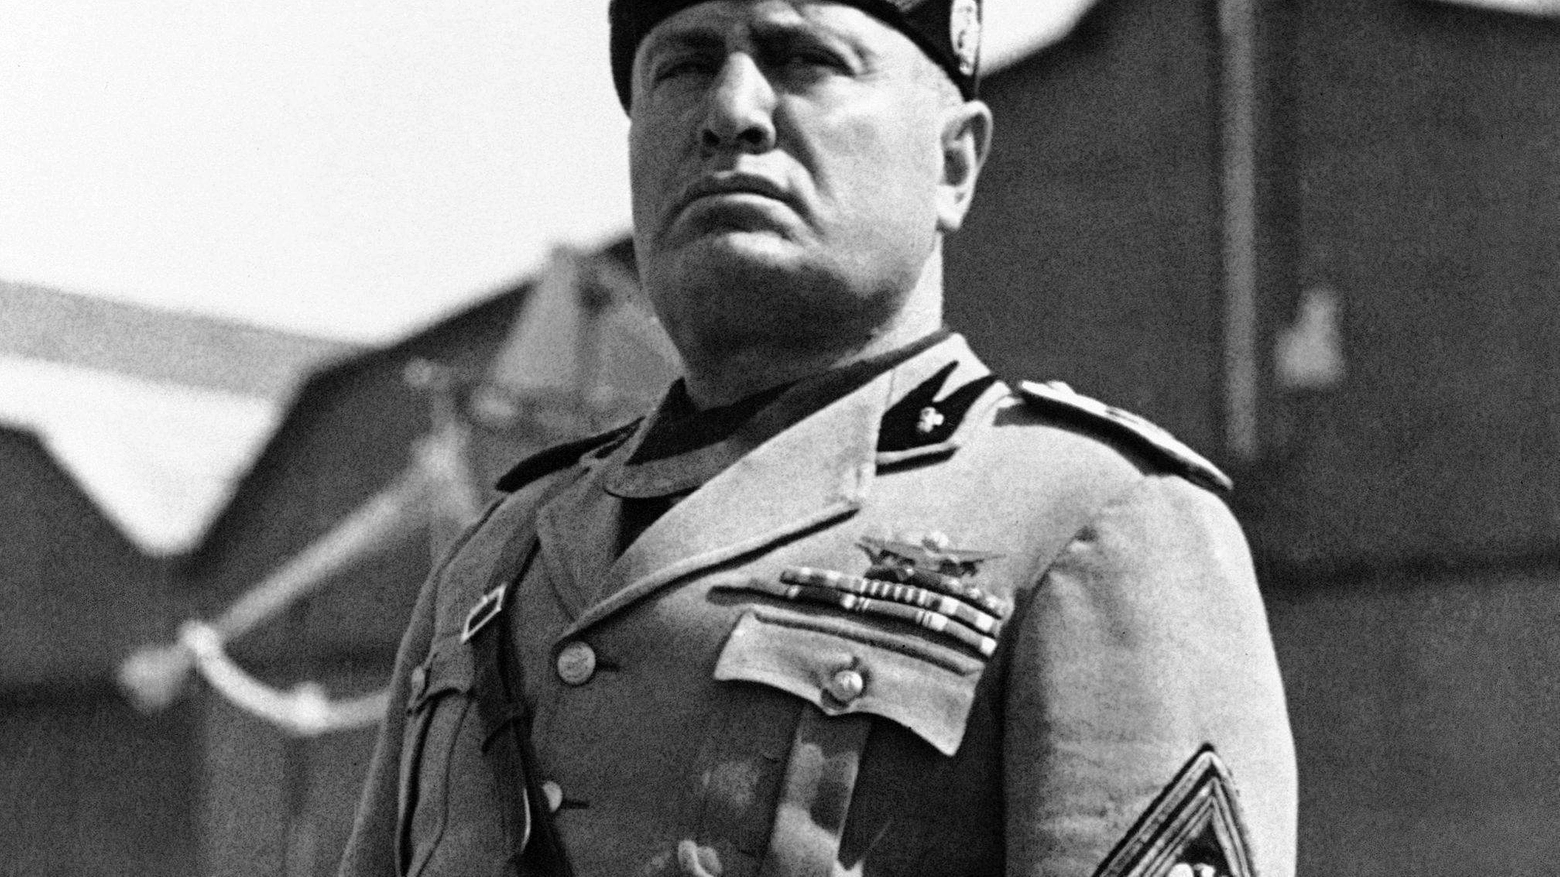 1943 – Mussolini sfiduciato, cade il fascismo